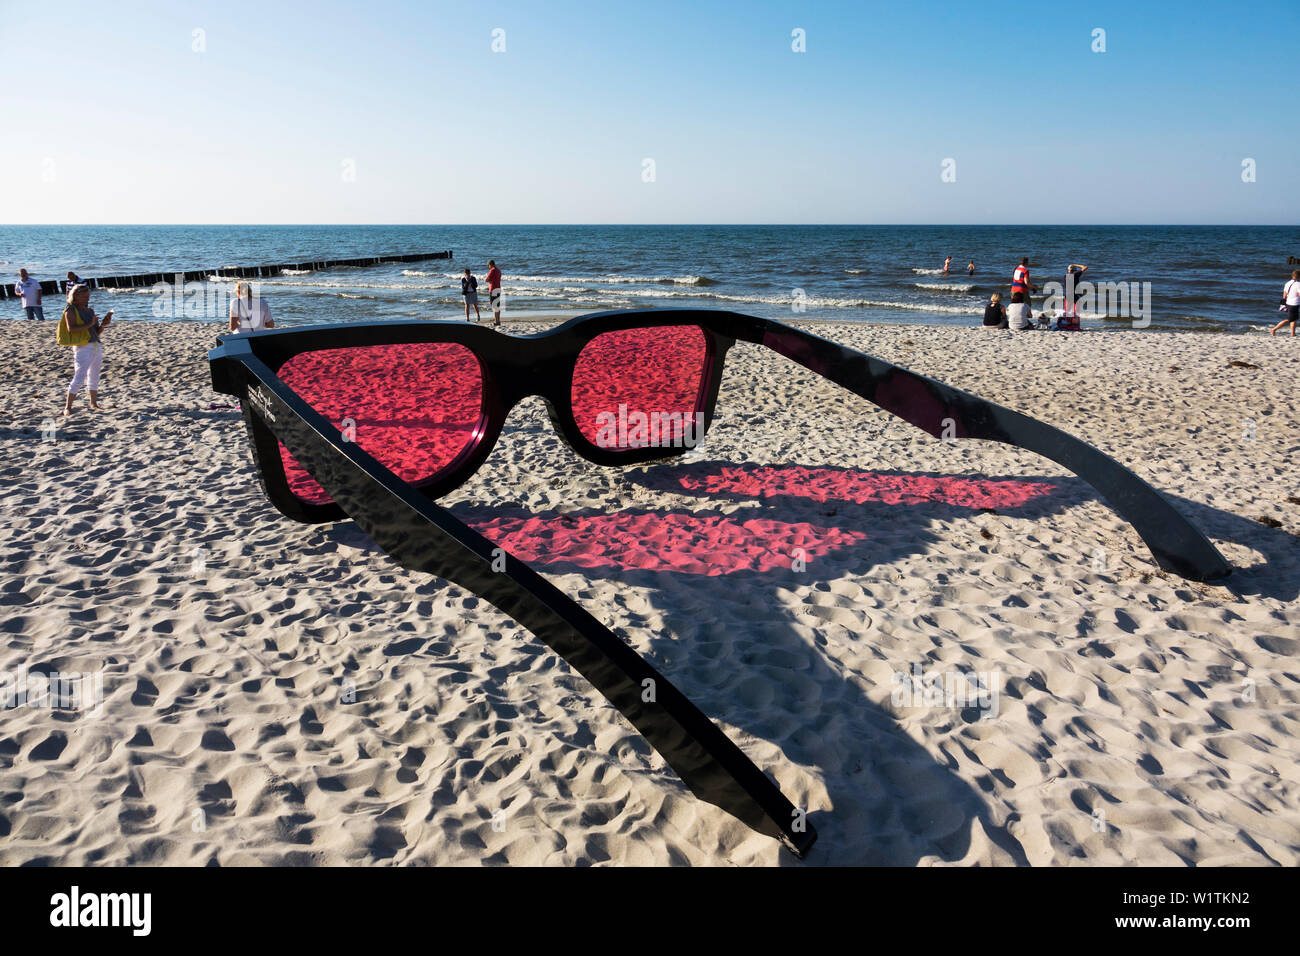 Riesige Sonnenbrille am Strand, Ostsee, Zingst, Mecklenburg-Vorpommern,  Deutschland Stockfotografie - Alamy